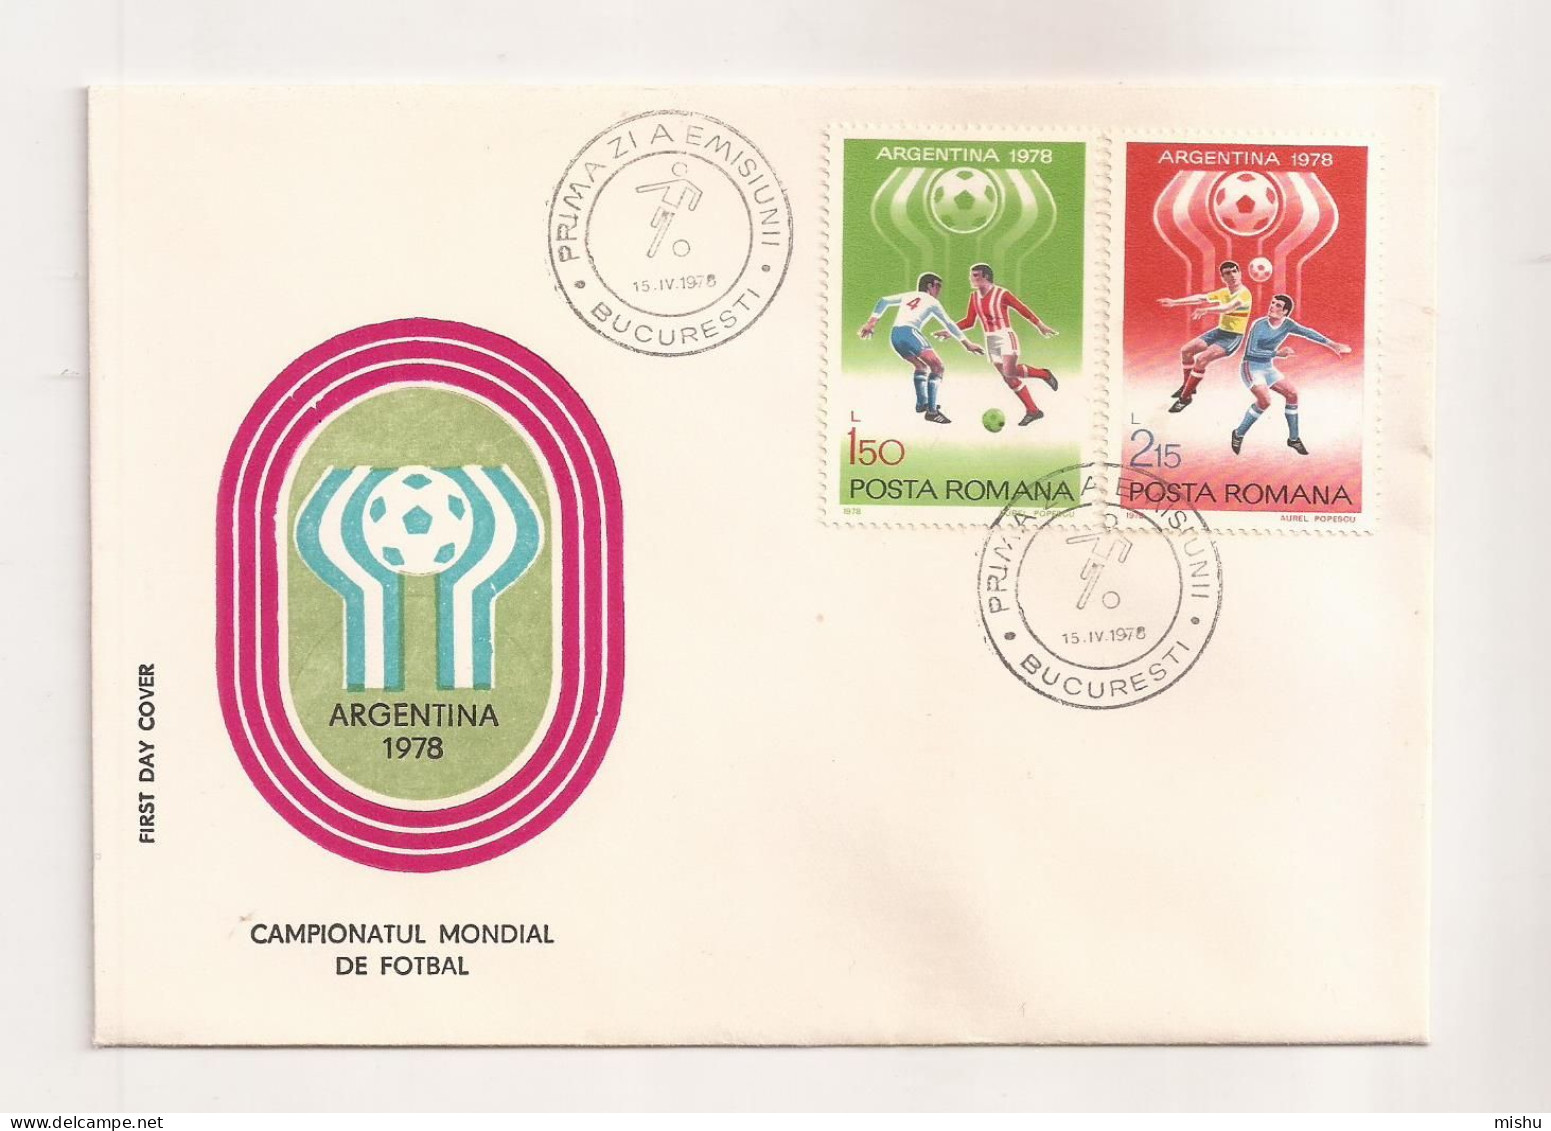 P2 Plic FDC ROMANIA - Prima Zi A Emisiunii - Campionatul Mondial De Fotbal Argentina 1978 - First Day Cover , - FDC